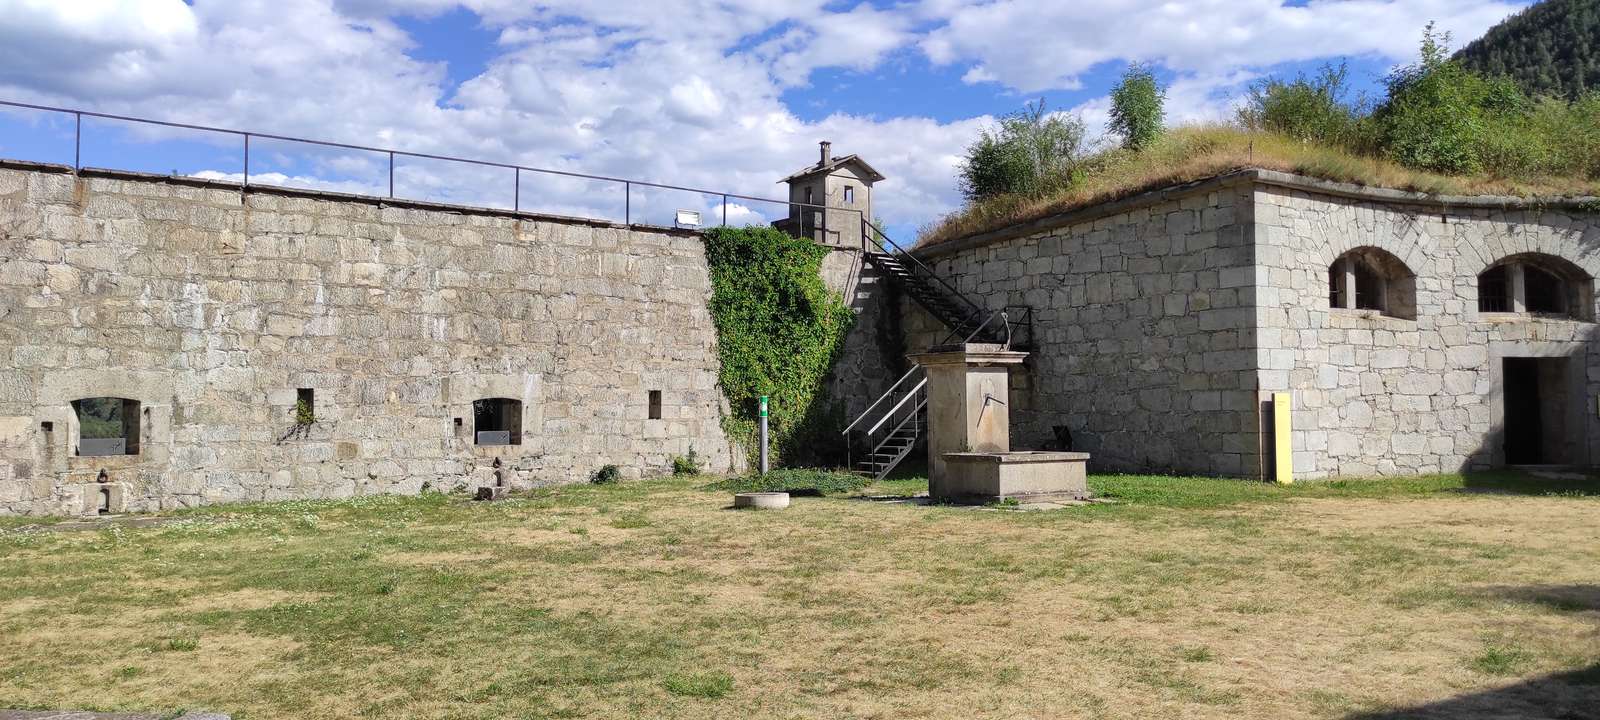 Fort Fortezza Bz legpuzzel online